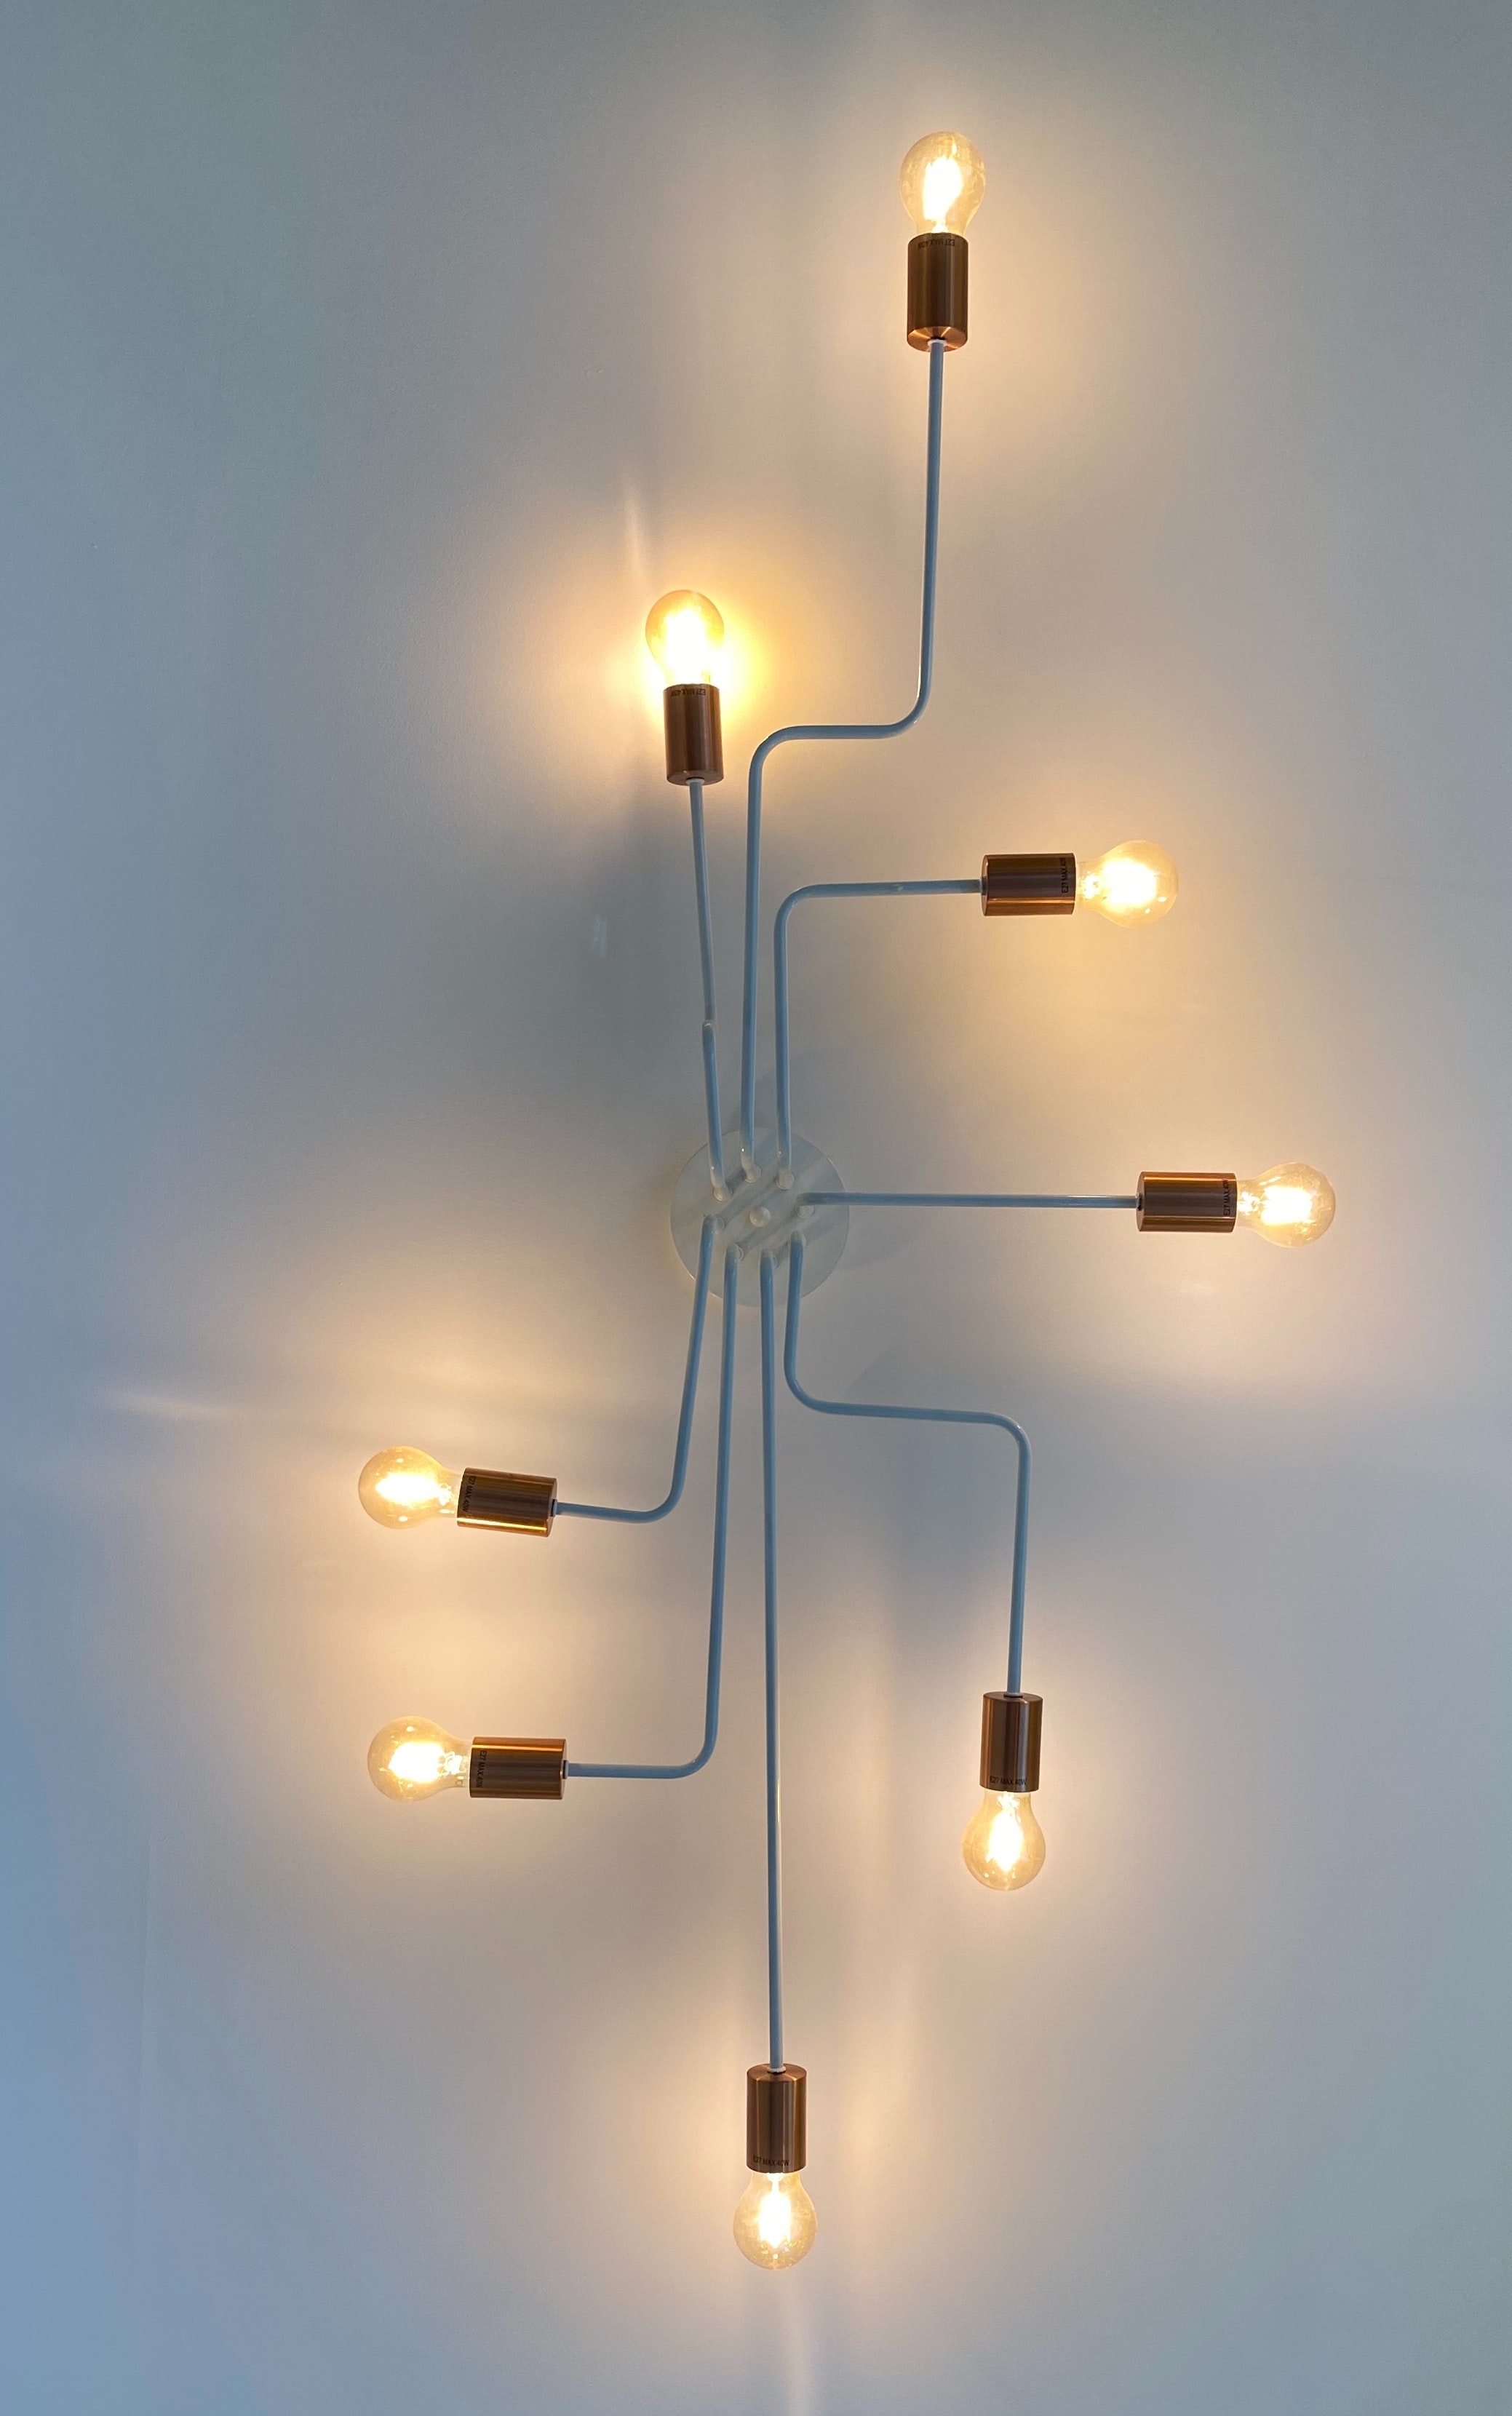 Un luminaire composé de huit ampoules reliées les unes aux autres par une tige.